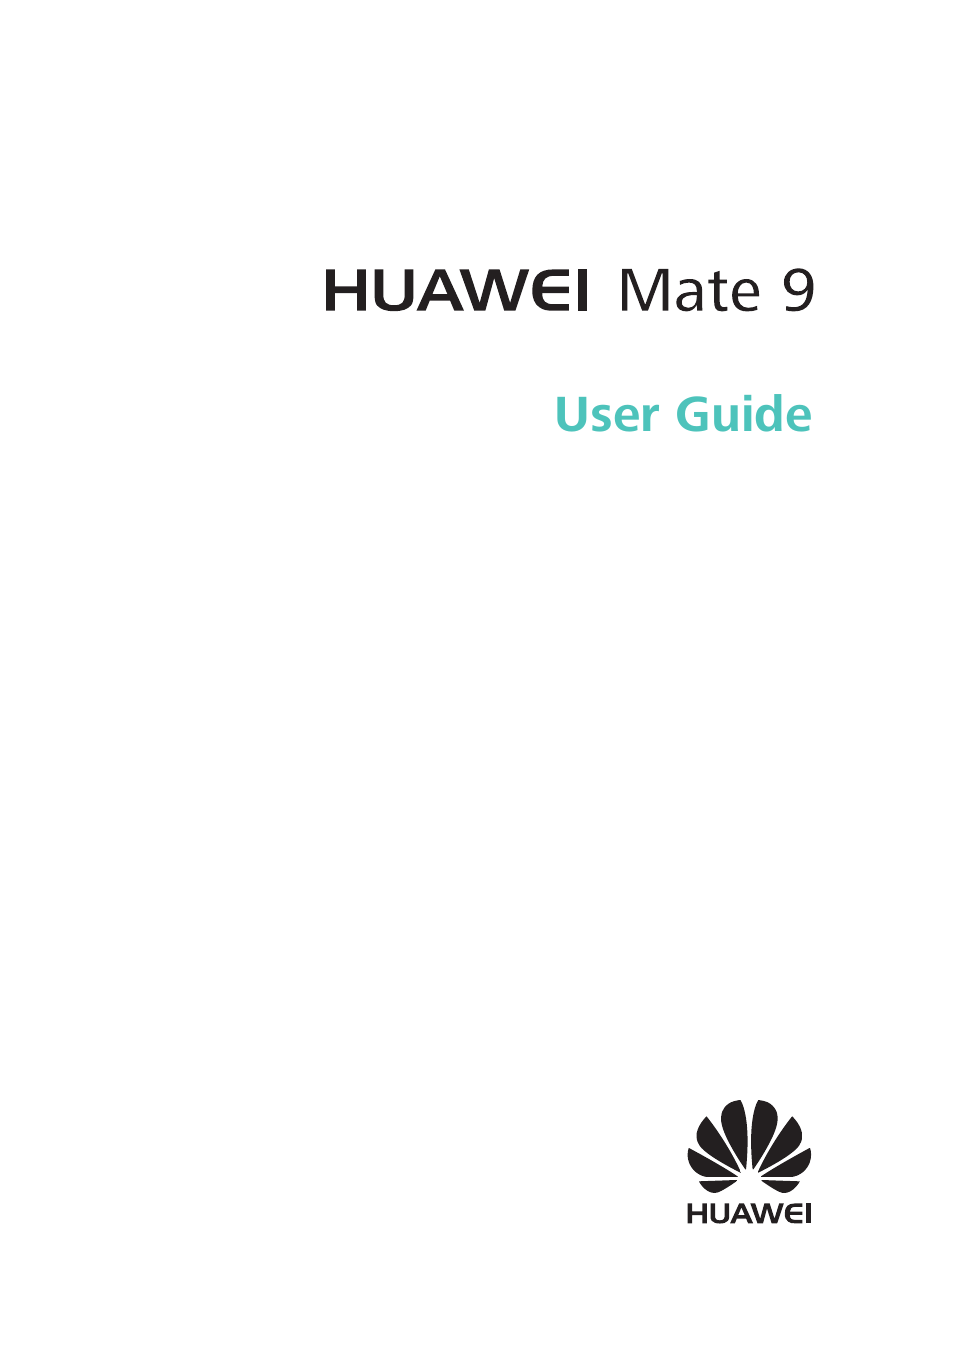 Huawei mate 9 update